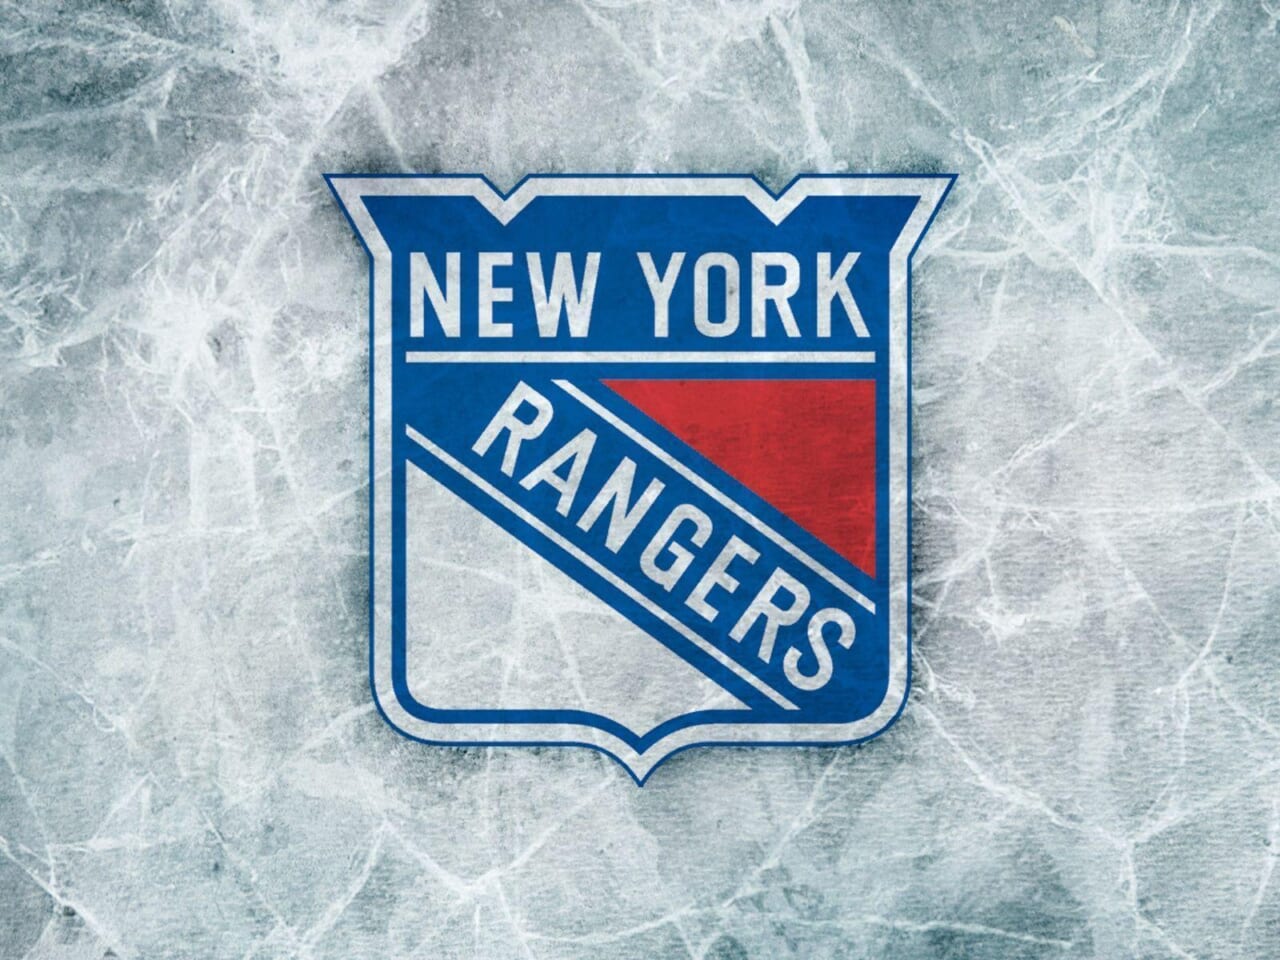 New York Ranger draft pick named to preliminary roster for Team USA